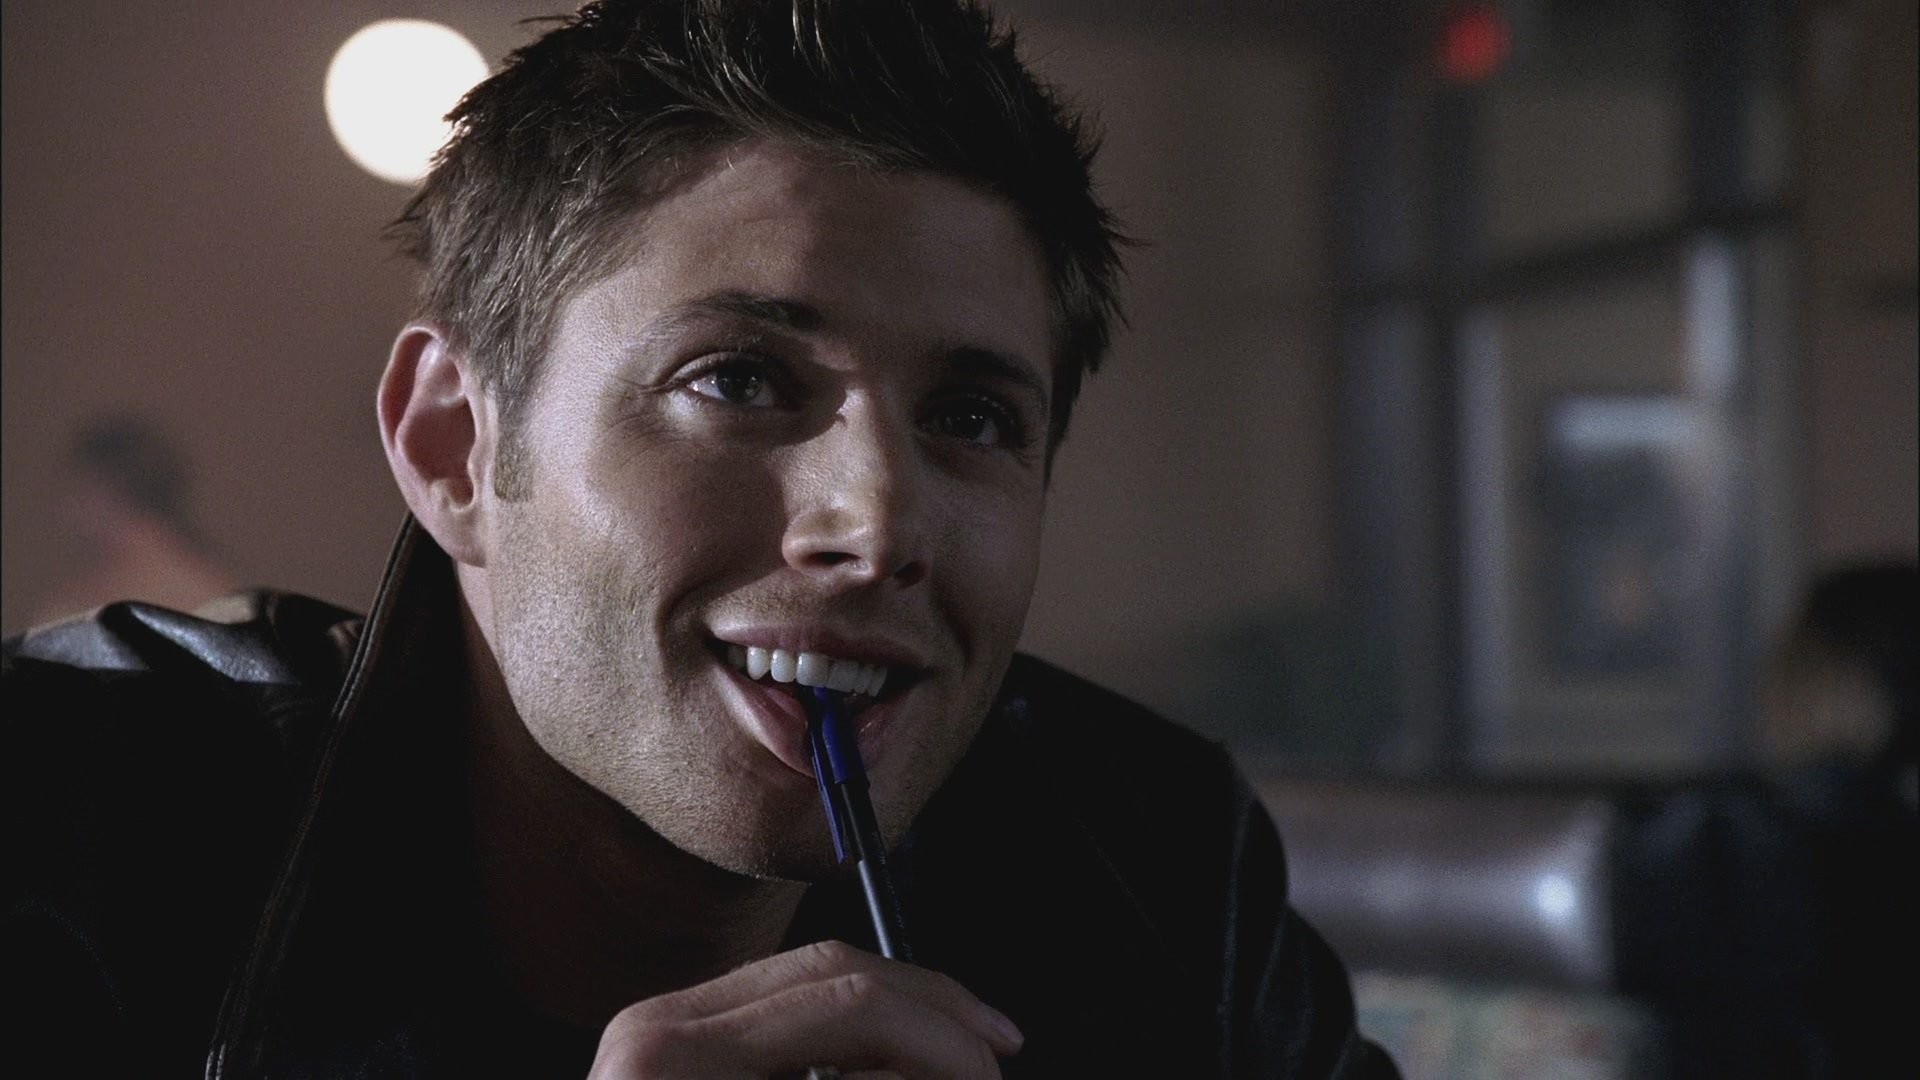  𝑊𝑎𝑙𝑙𝑝𝑎𝑝𝑒𝑟 Jensen Ackles  Supernatural wallpaper  Supernatural background Supernatural dean